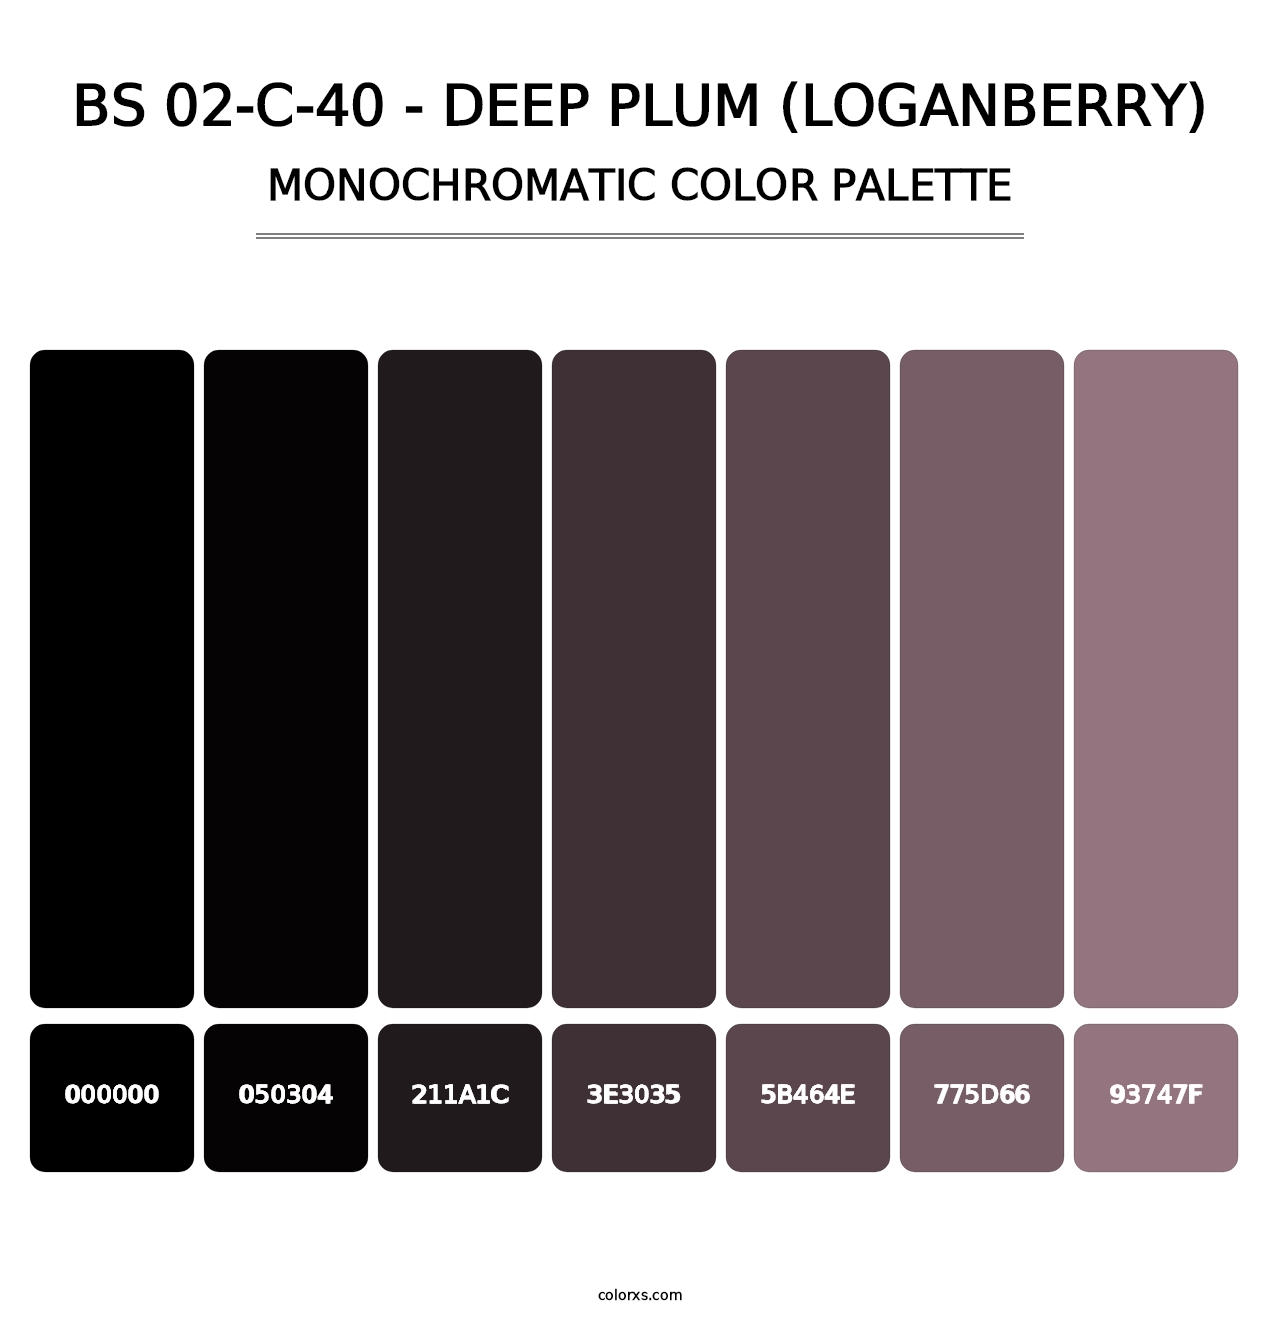 BS 02-C-40 - Deep Plum (Loganberry) - Monochromatic Color Palette